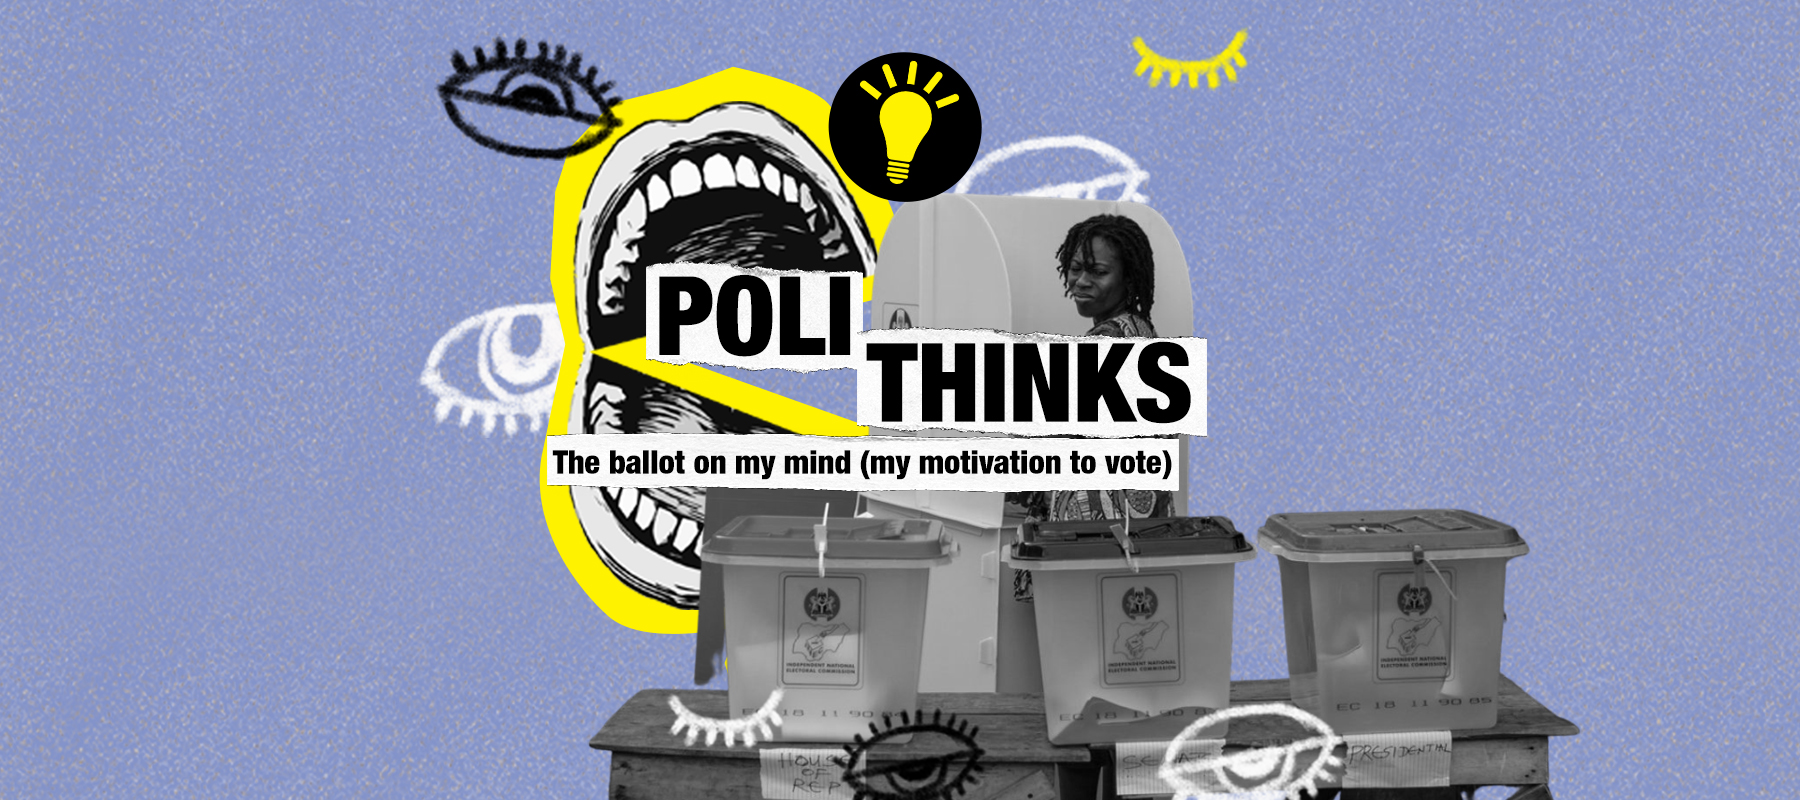 Polithinks: My Motivation to Vote